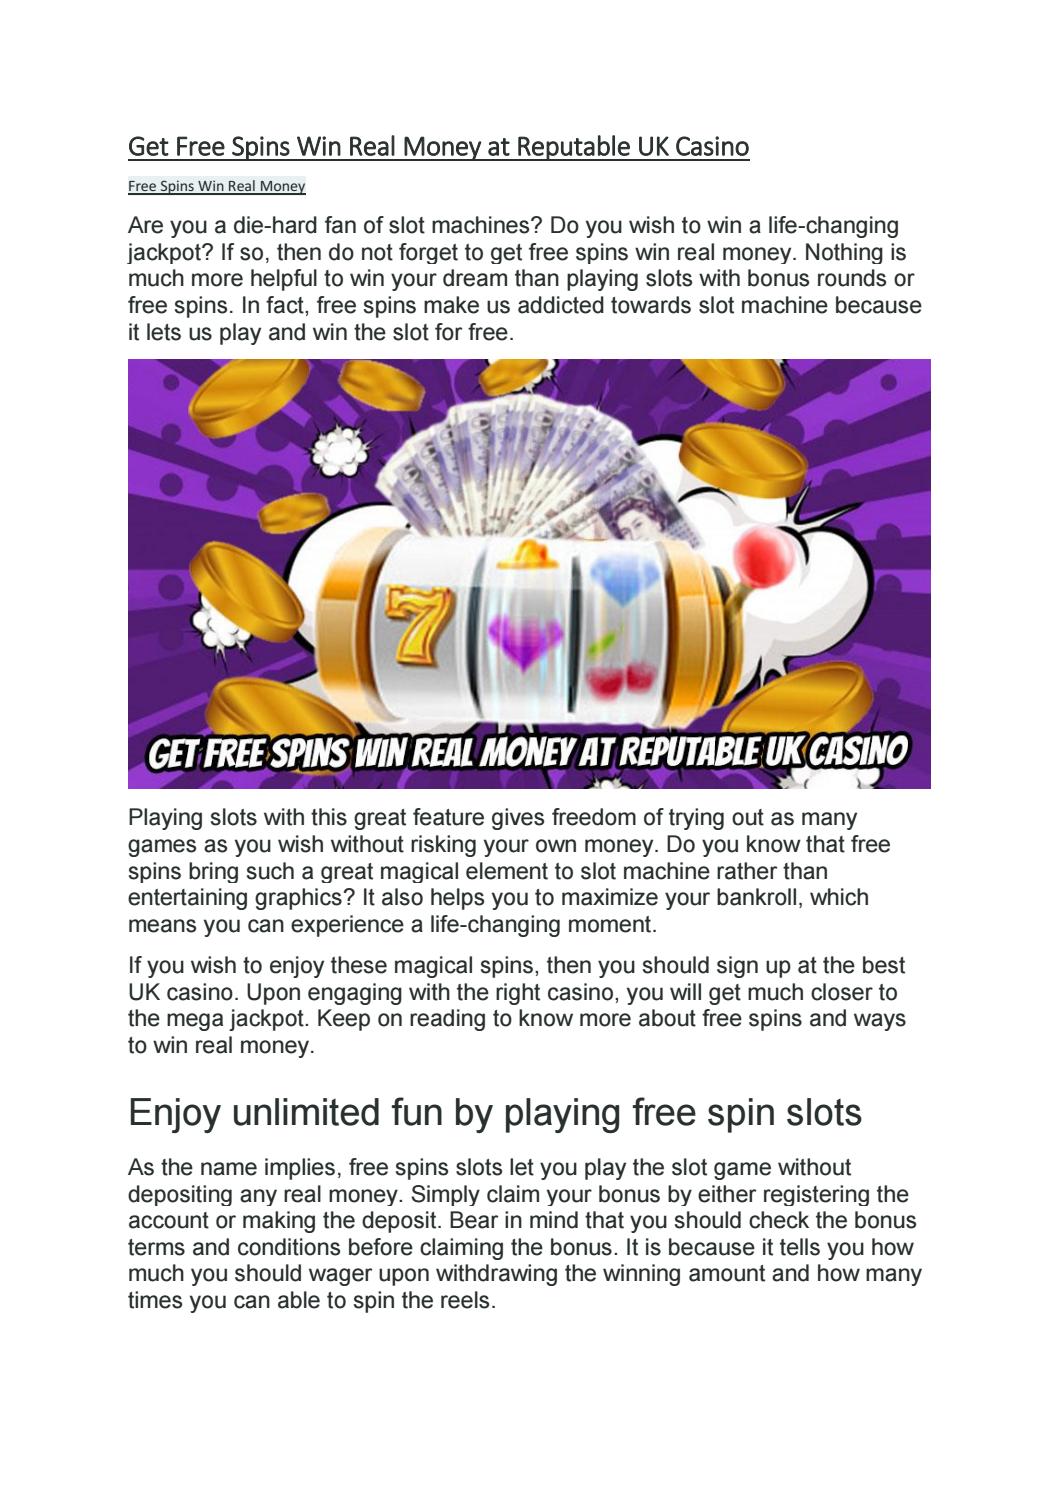 win free money casino